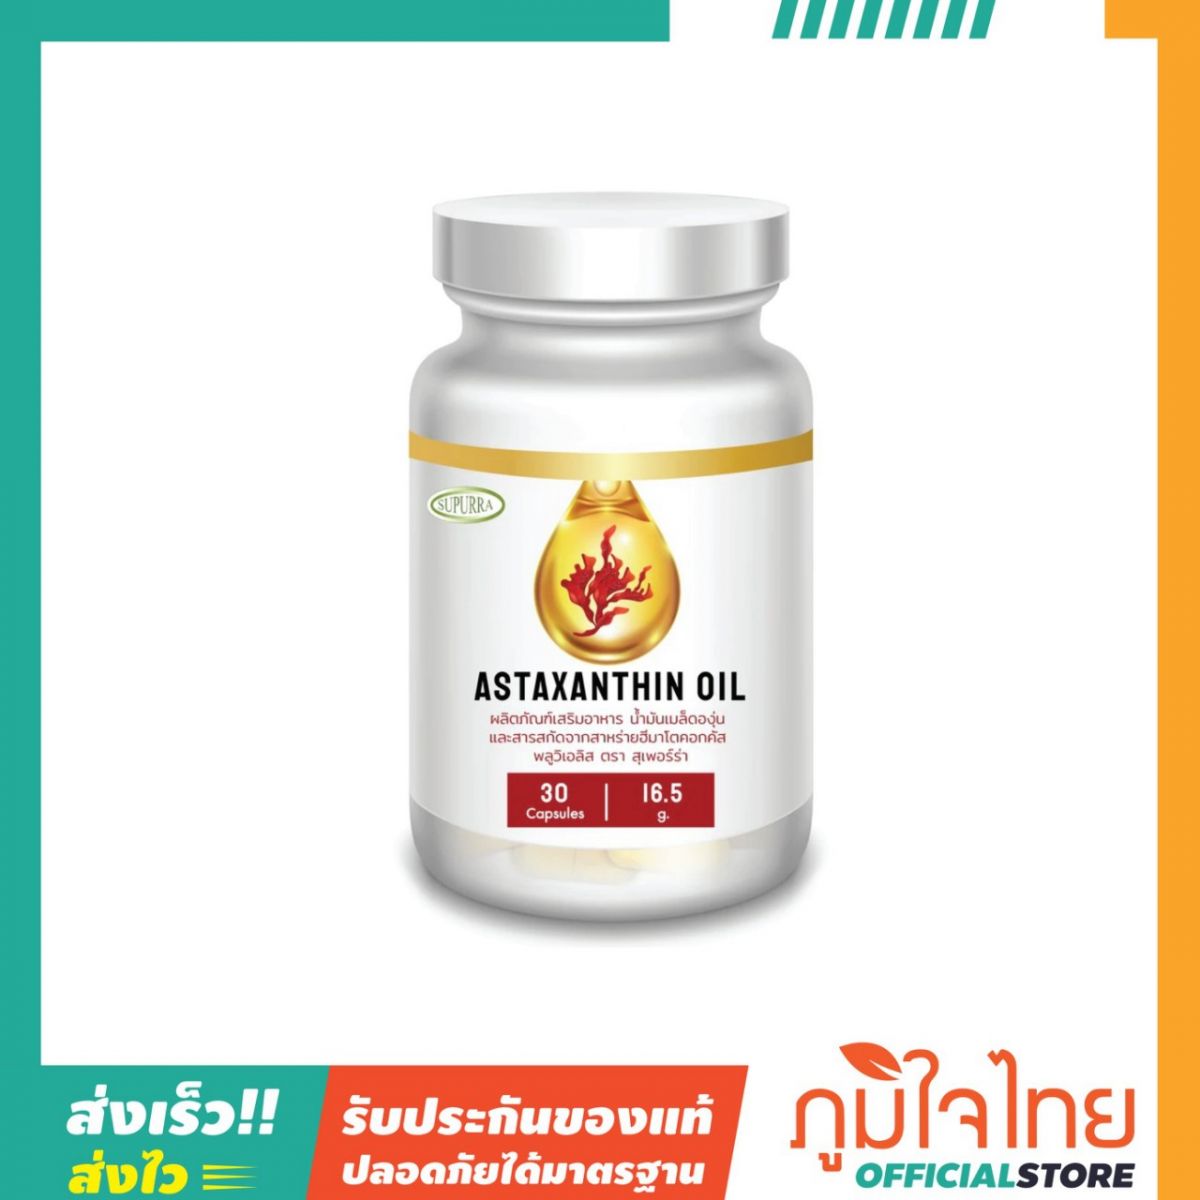 Astaxanthin Oil ผลิตภัณฑ์เสริมอาหารน้ำมันเมล็ดองุ่น 30แคป สุเพอร์ร่า